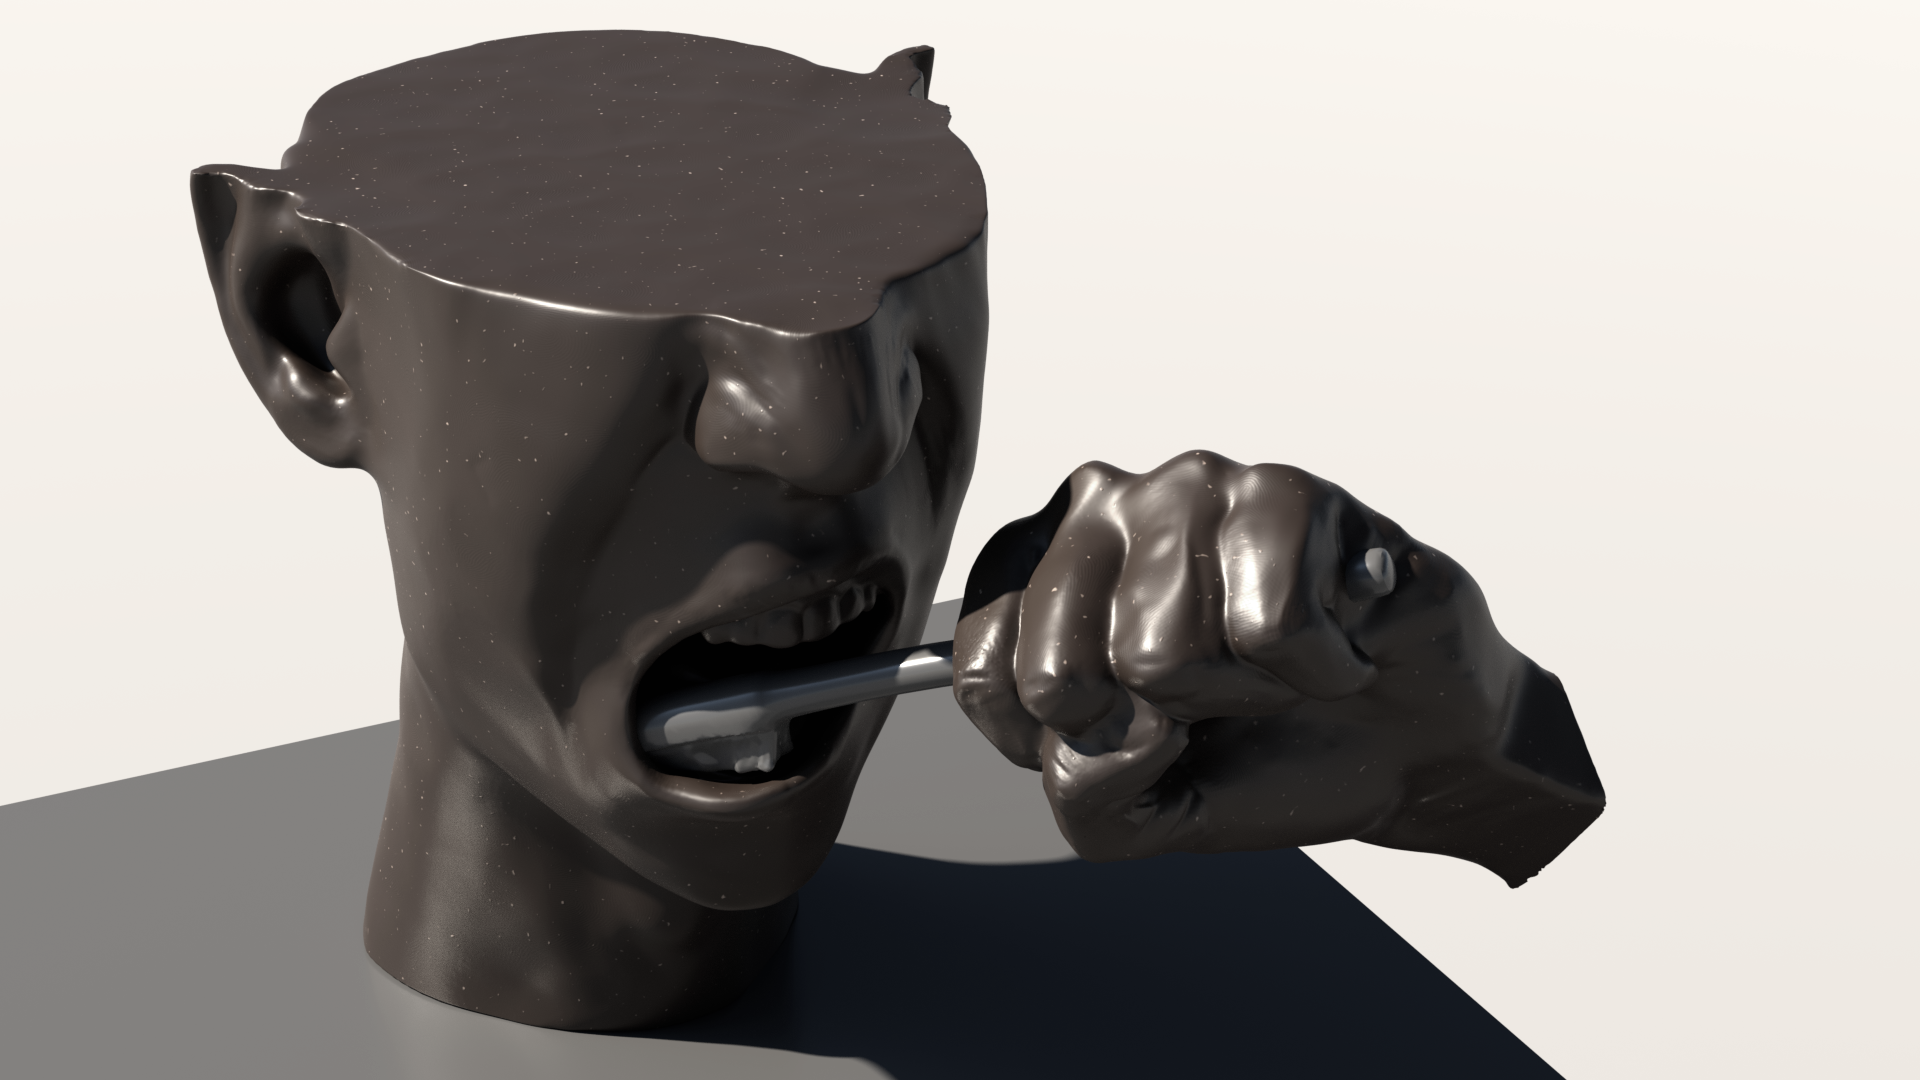 Rzeźba cyfrowa przedstawiająca wycinek ludzkiej głowy i dłoń trzymającąszczoteczkę do zębów. Kompozycja skupia się na ukazaniu otwartych ust i myciazębów.